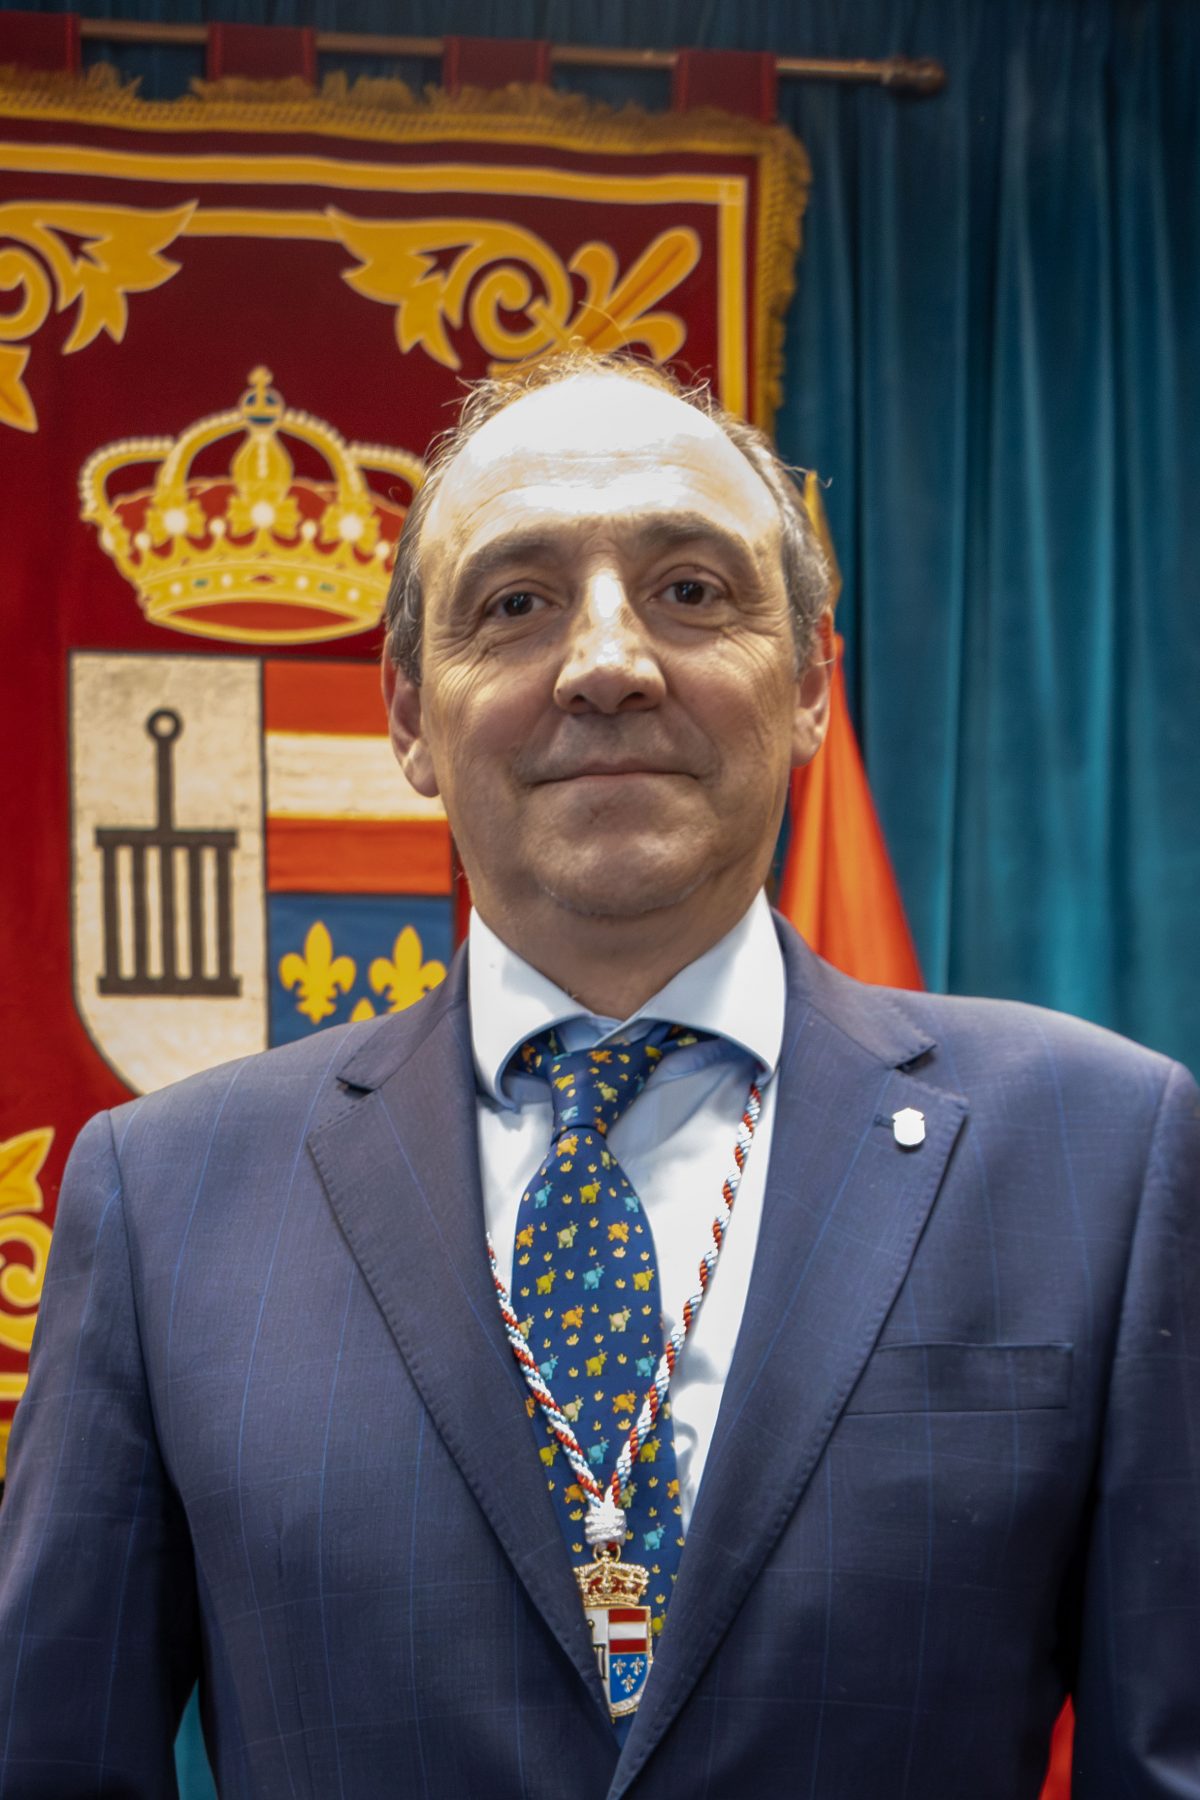 José María Herranz Sánchez